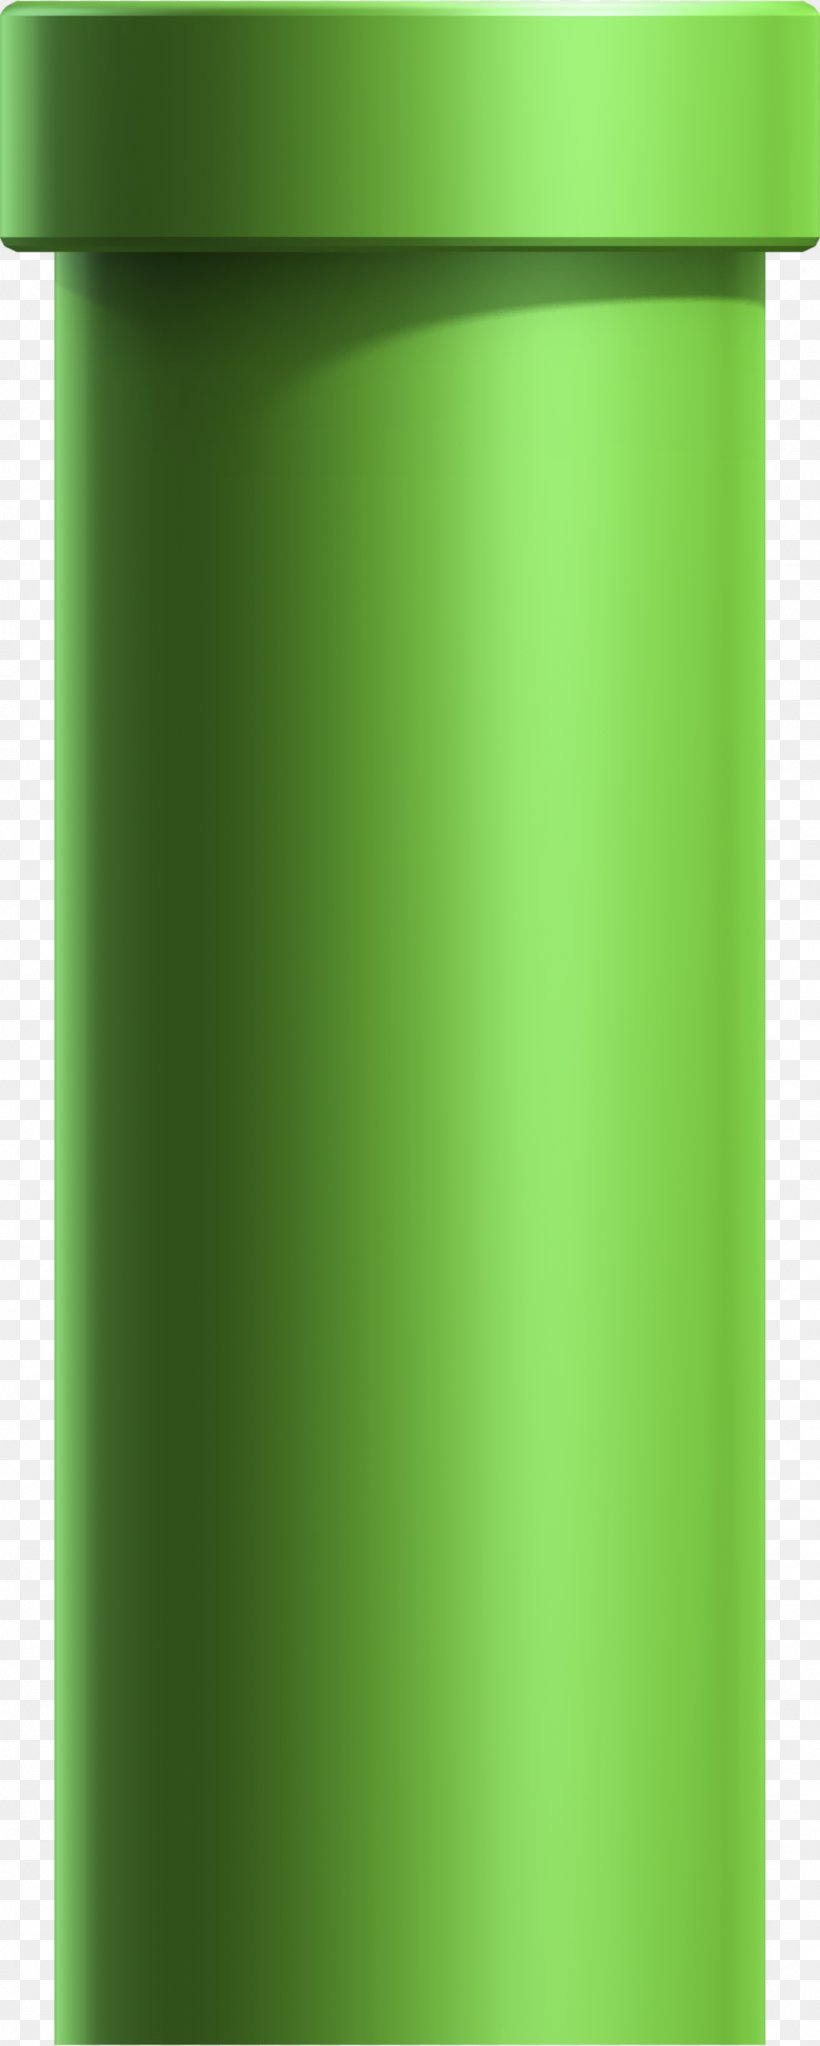 Cylinder Bottle, PNG, 1087x2713px, Cylinder, Bottle, Green Download Free